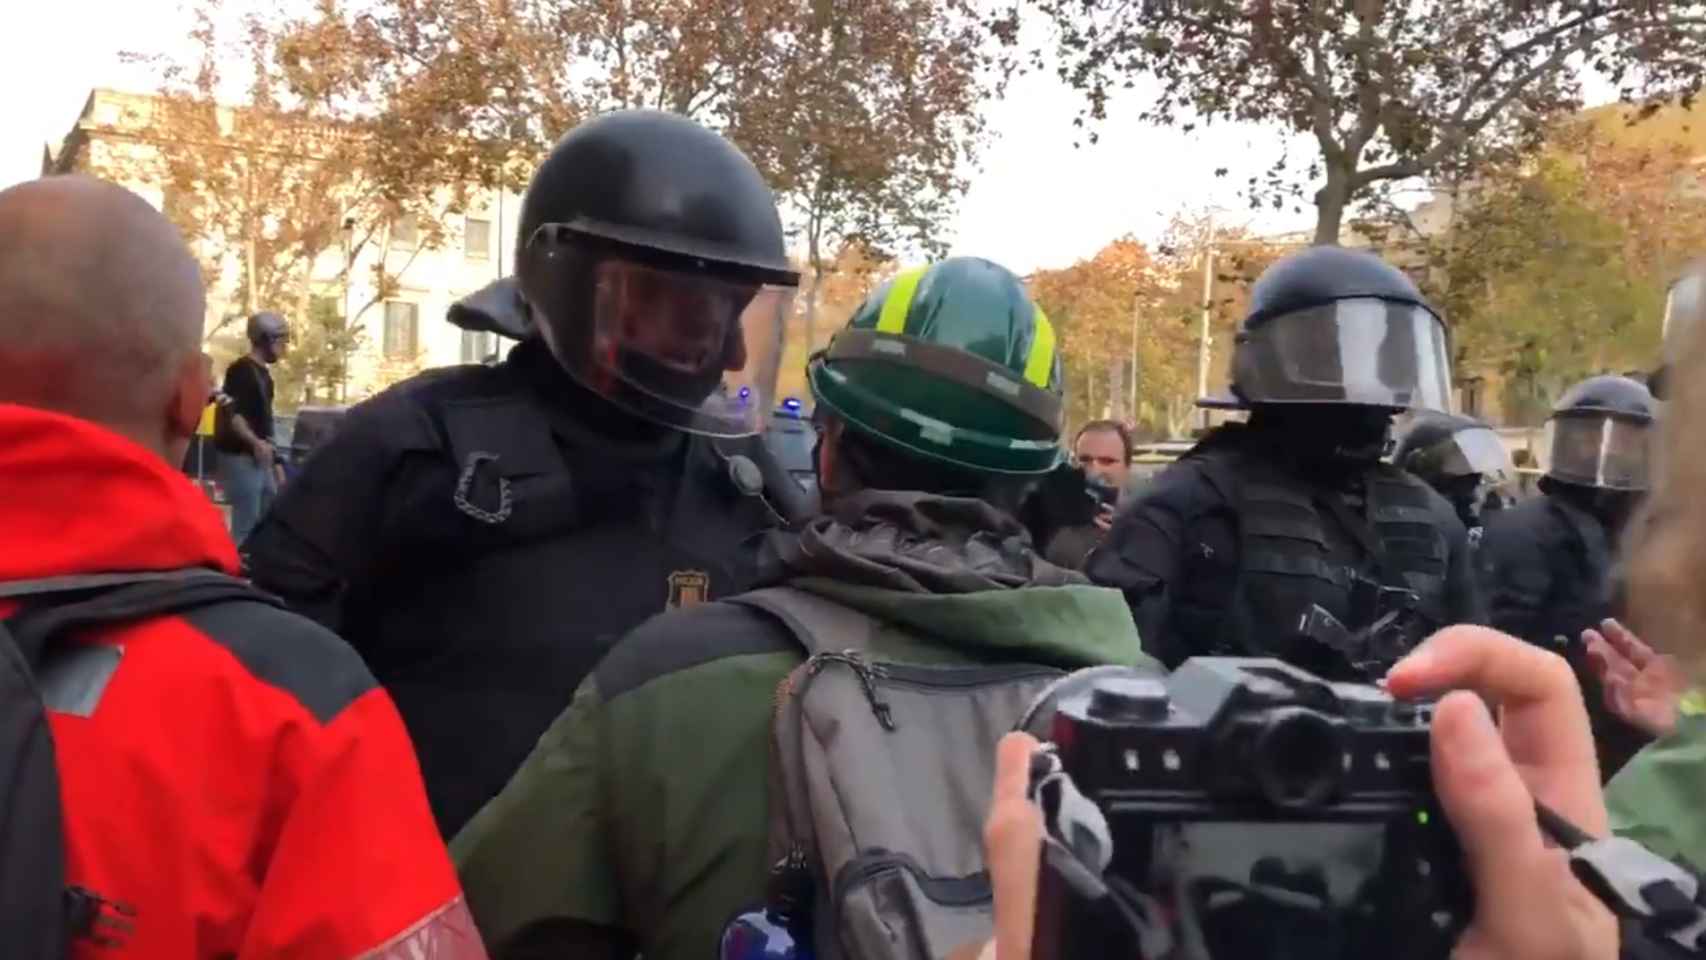 Tensión entre un mosso y un guardia forestal en Barcelona.